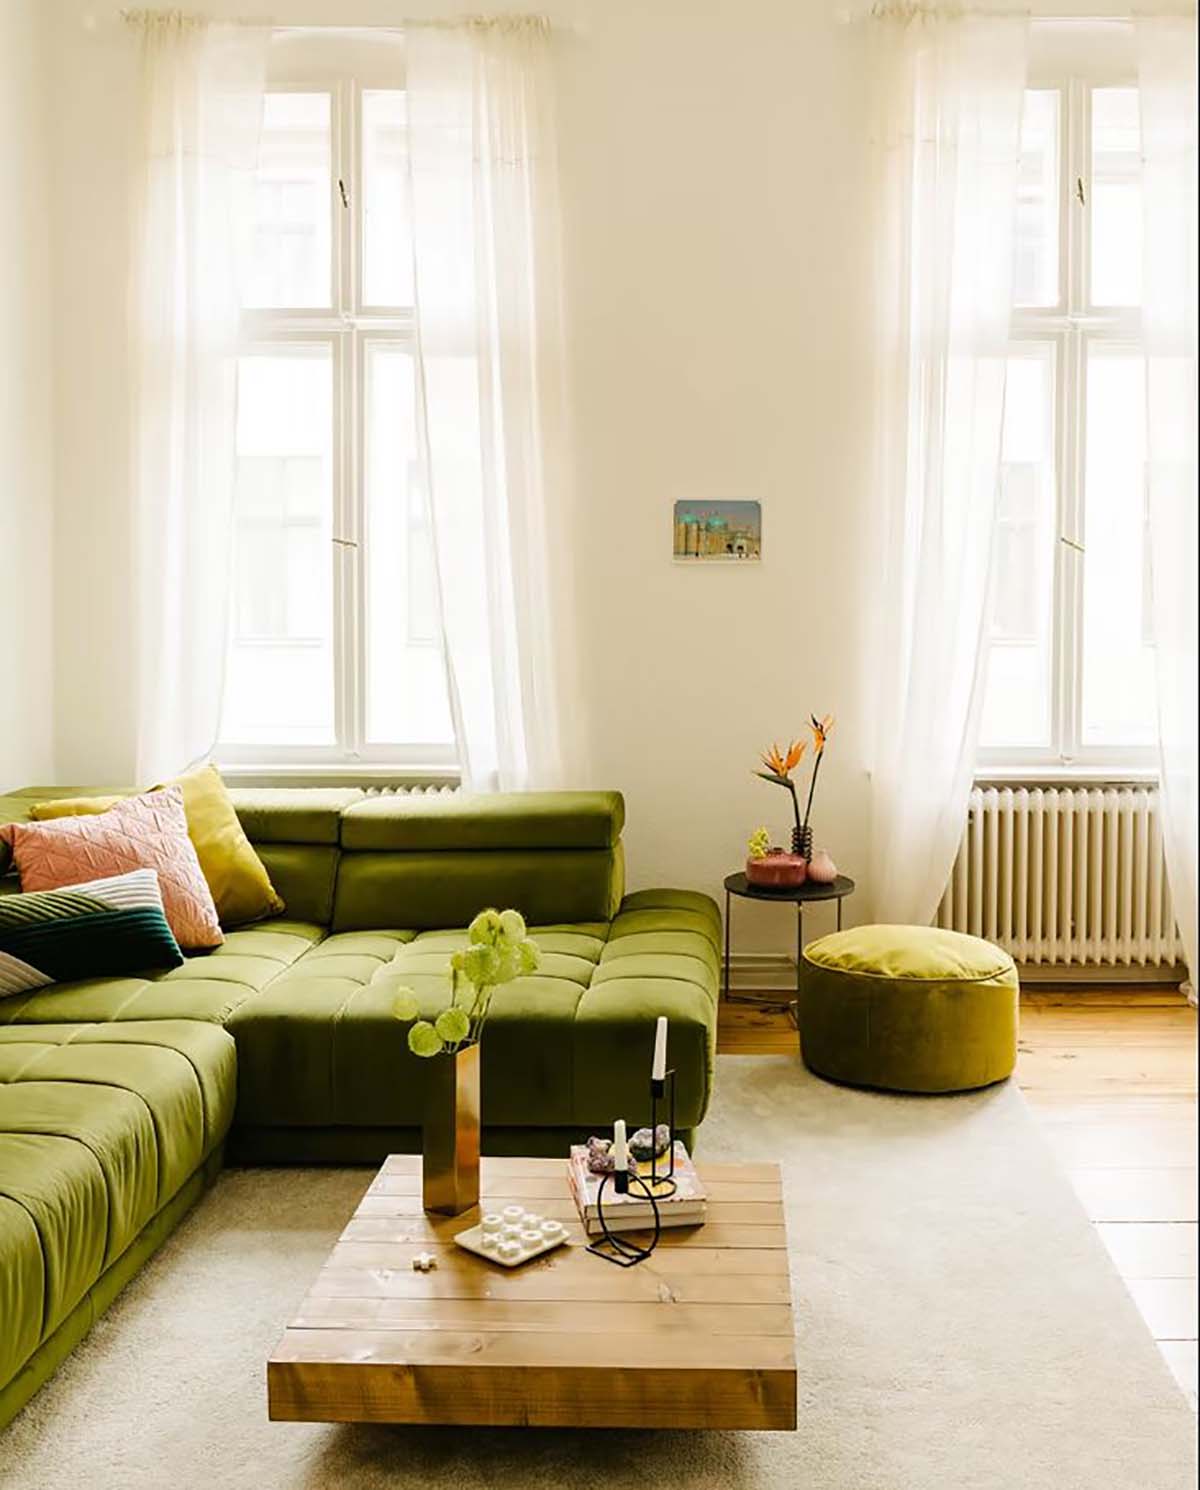 Ghế sofa xanh bơ làm nổi bật phòng khách.

Nguồn: Pinterest